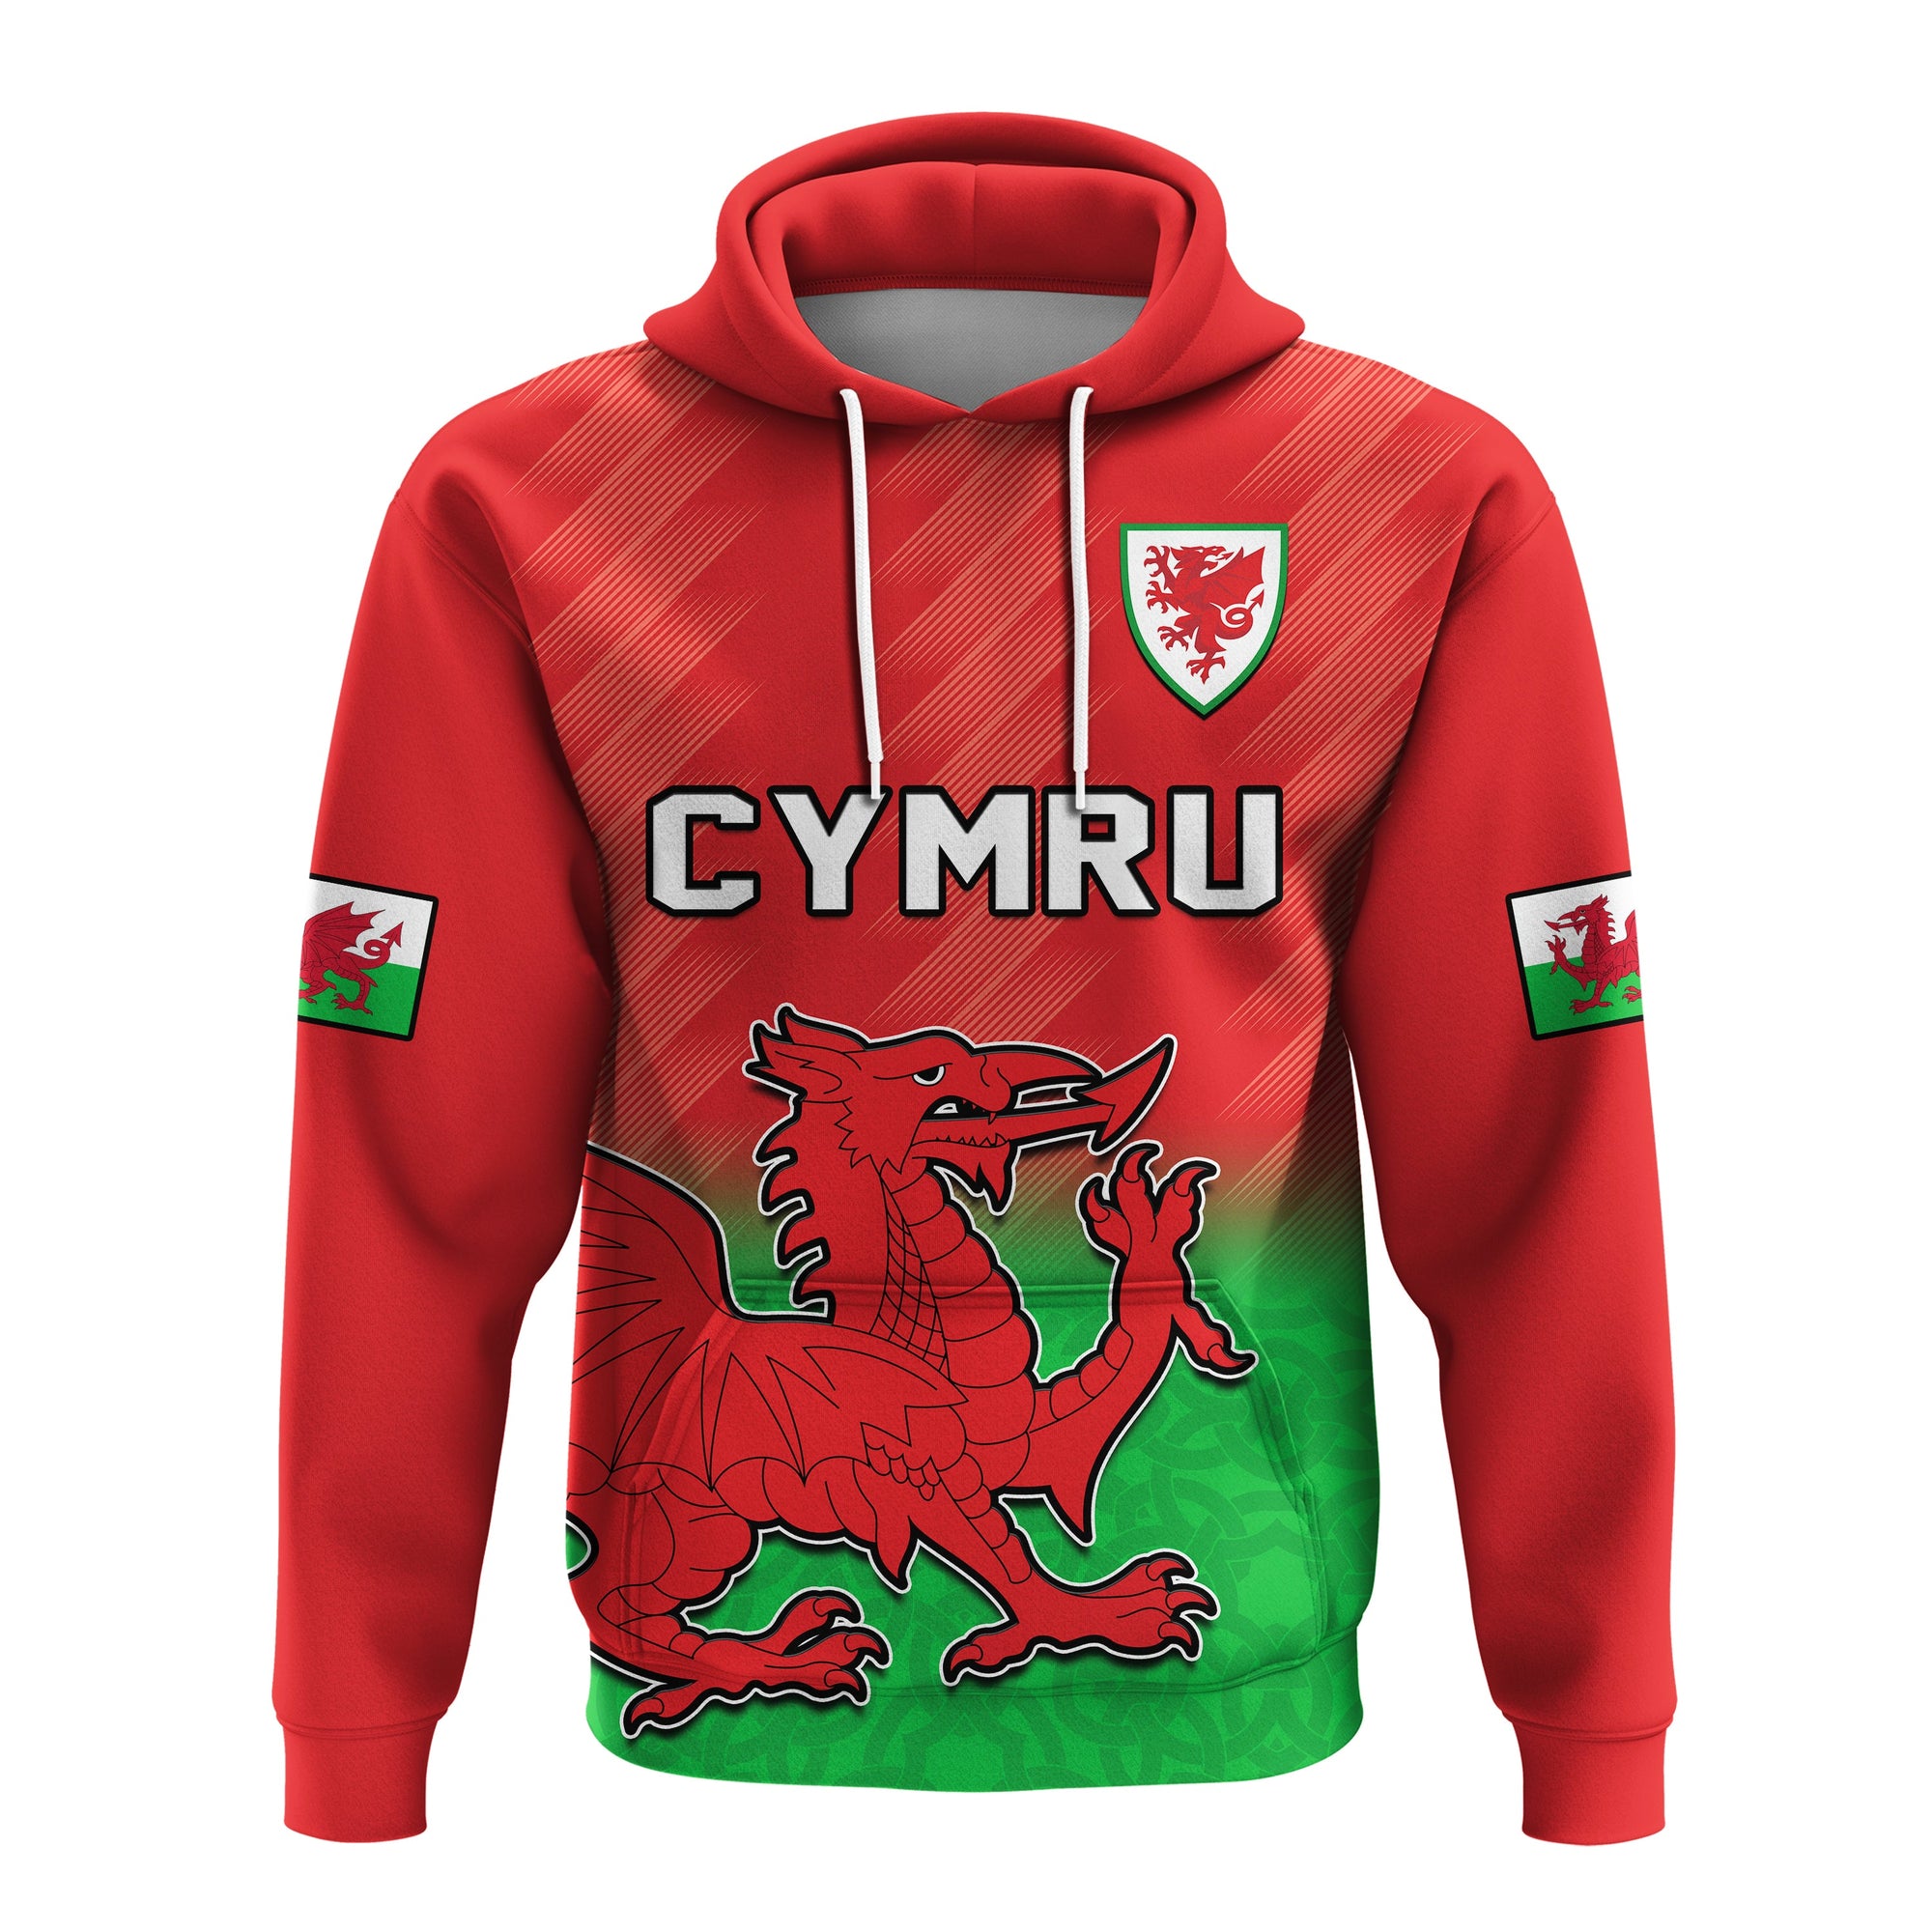 wales-football-hoodie-world-cup-2022-come-on-cymru-yma-o-hyd